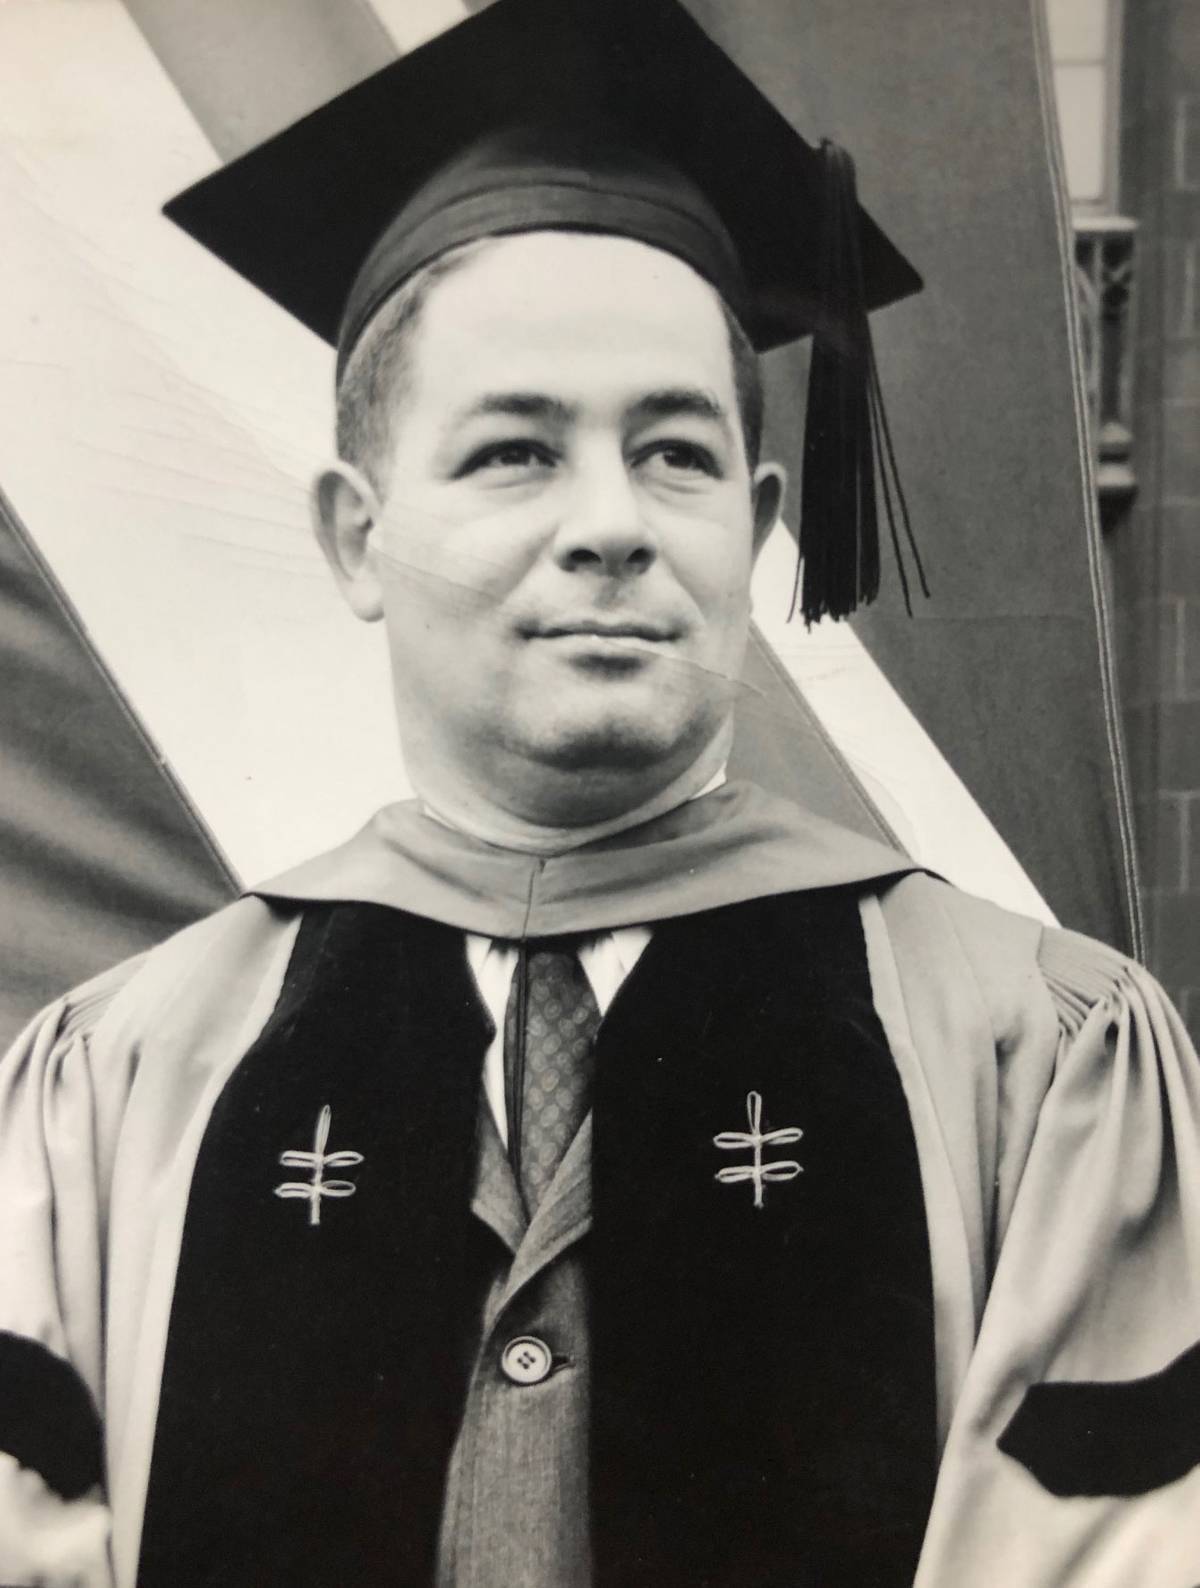 Graduation from Harvard, 1960